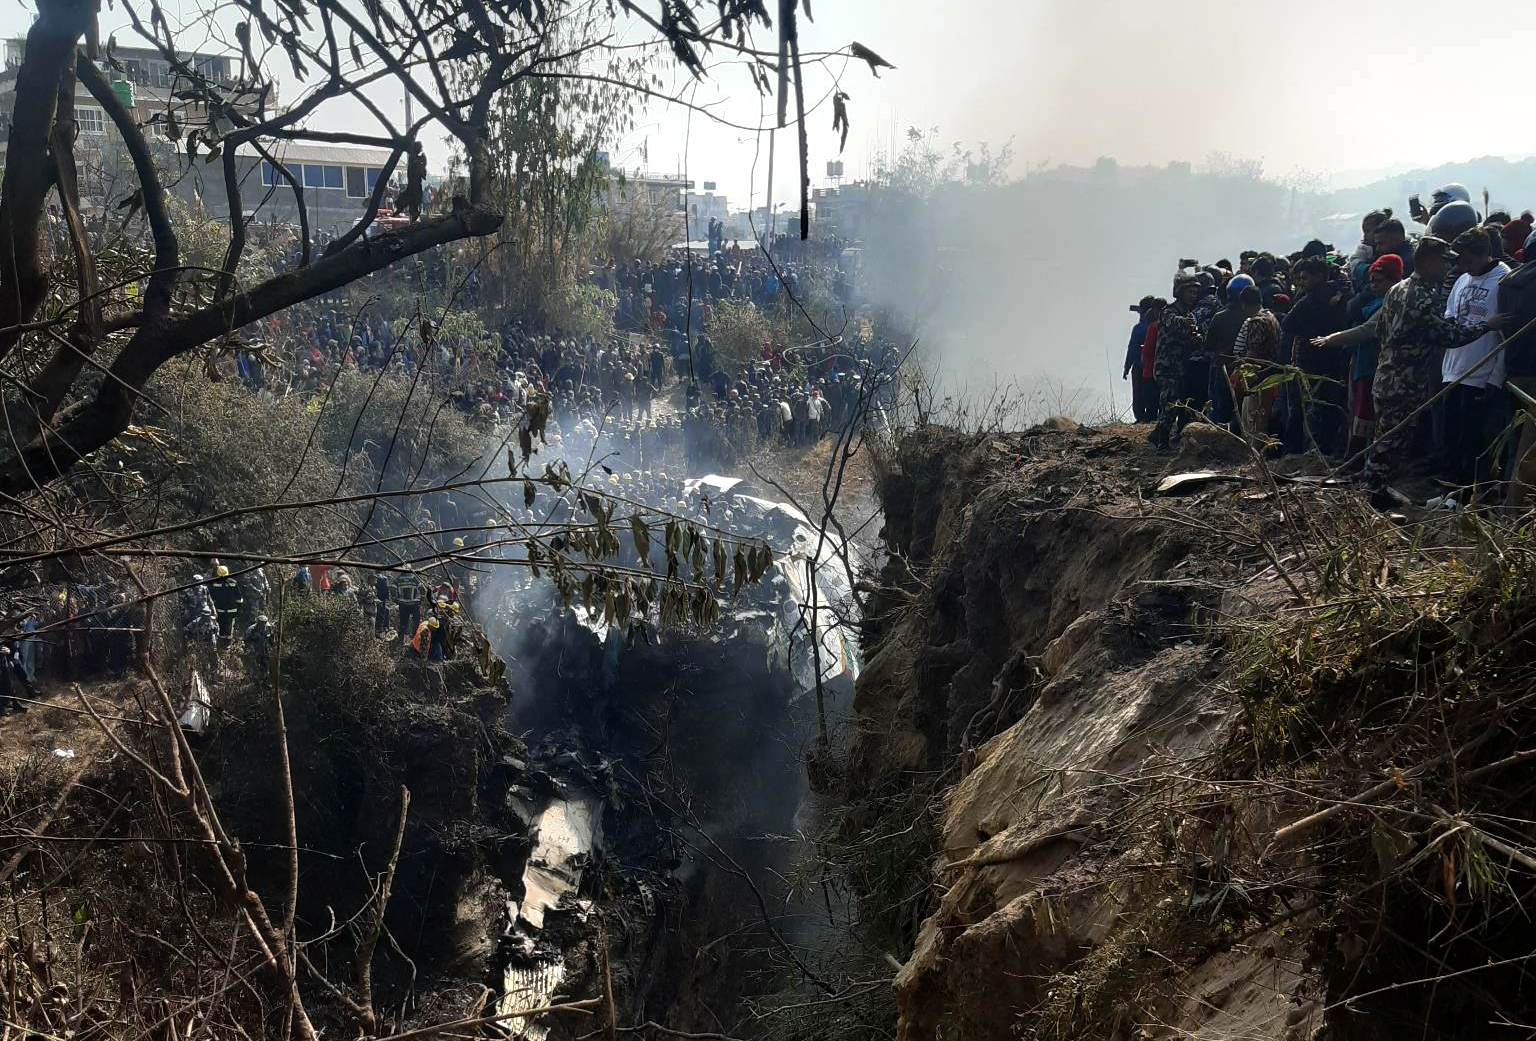 Авиакатастрофа 15. Катастрофа АТР 72 В Непале. Авиакатастрофа в Непале 2023. Катастрофа ATR 72 В Покхаре. 15 Января 2023 авиакатастрофа.